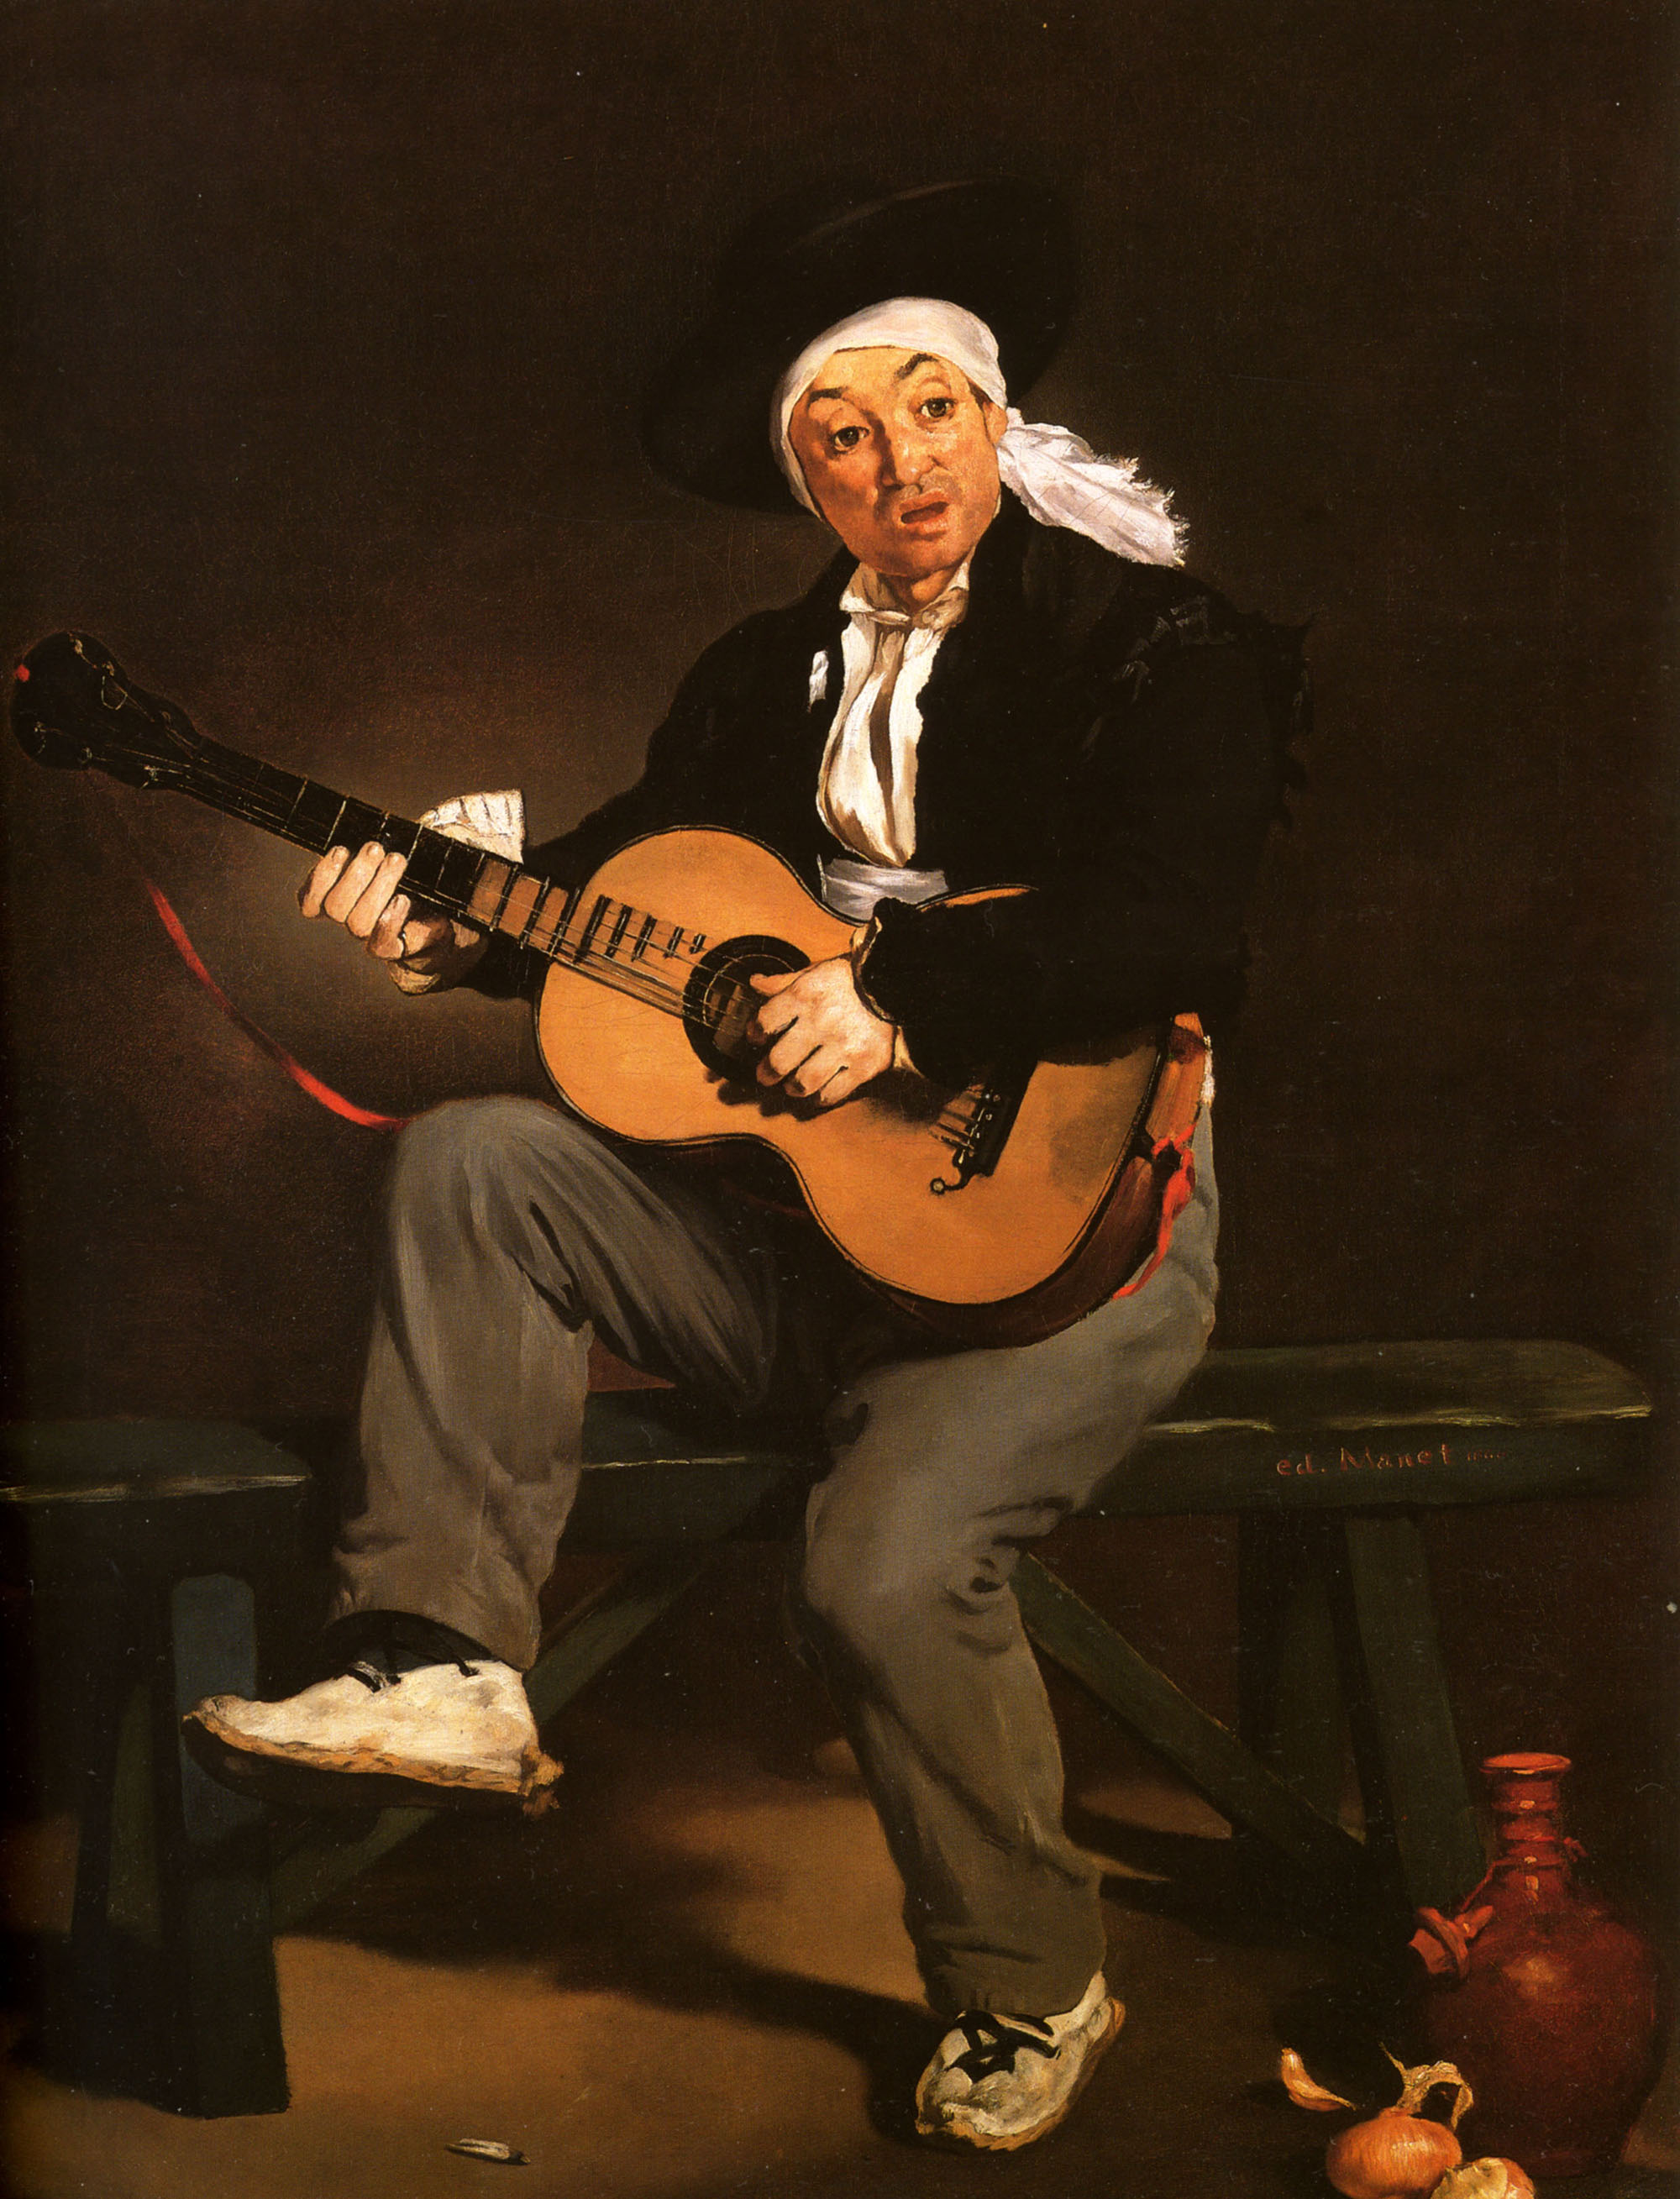 Эдуард Мане. "Испанский гитарист". 1861. Музей Метрополитен, Нью-Йорк.